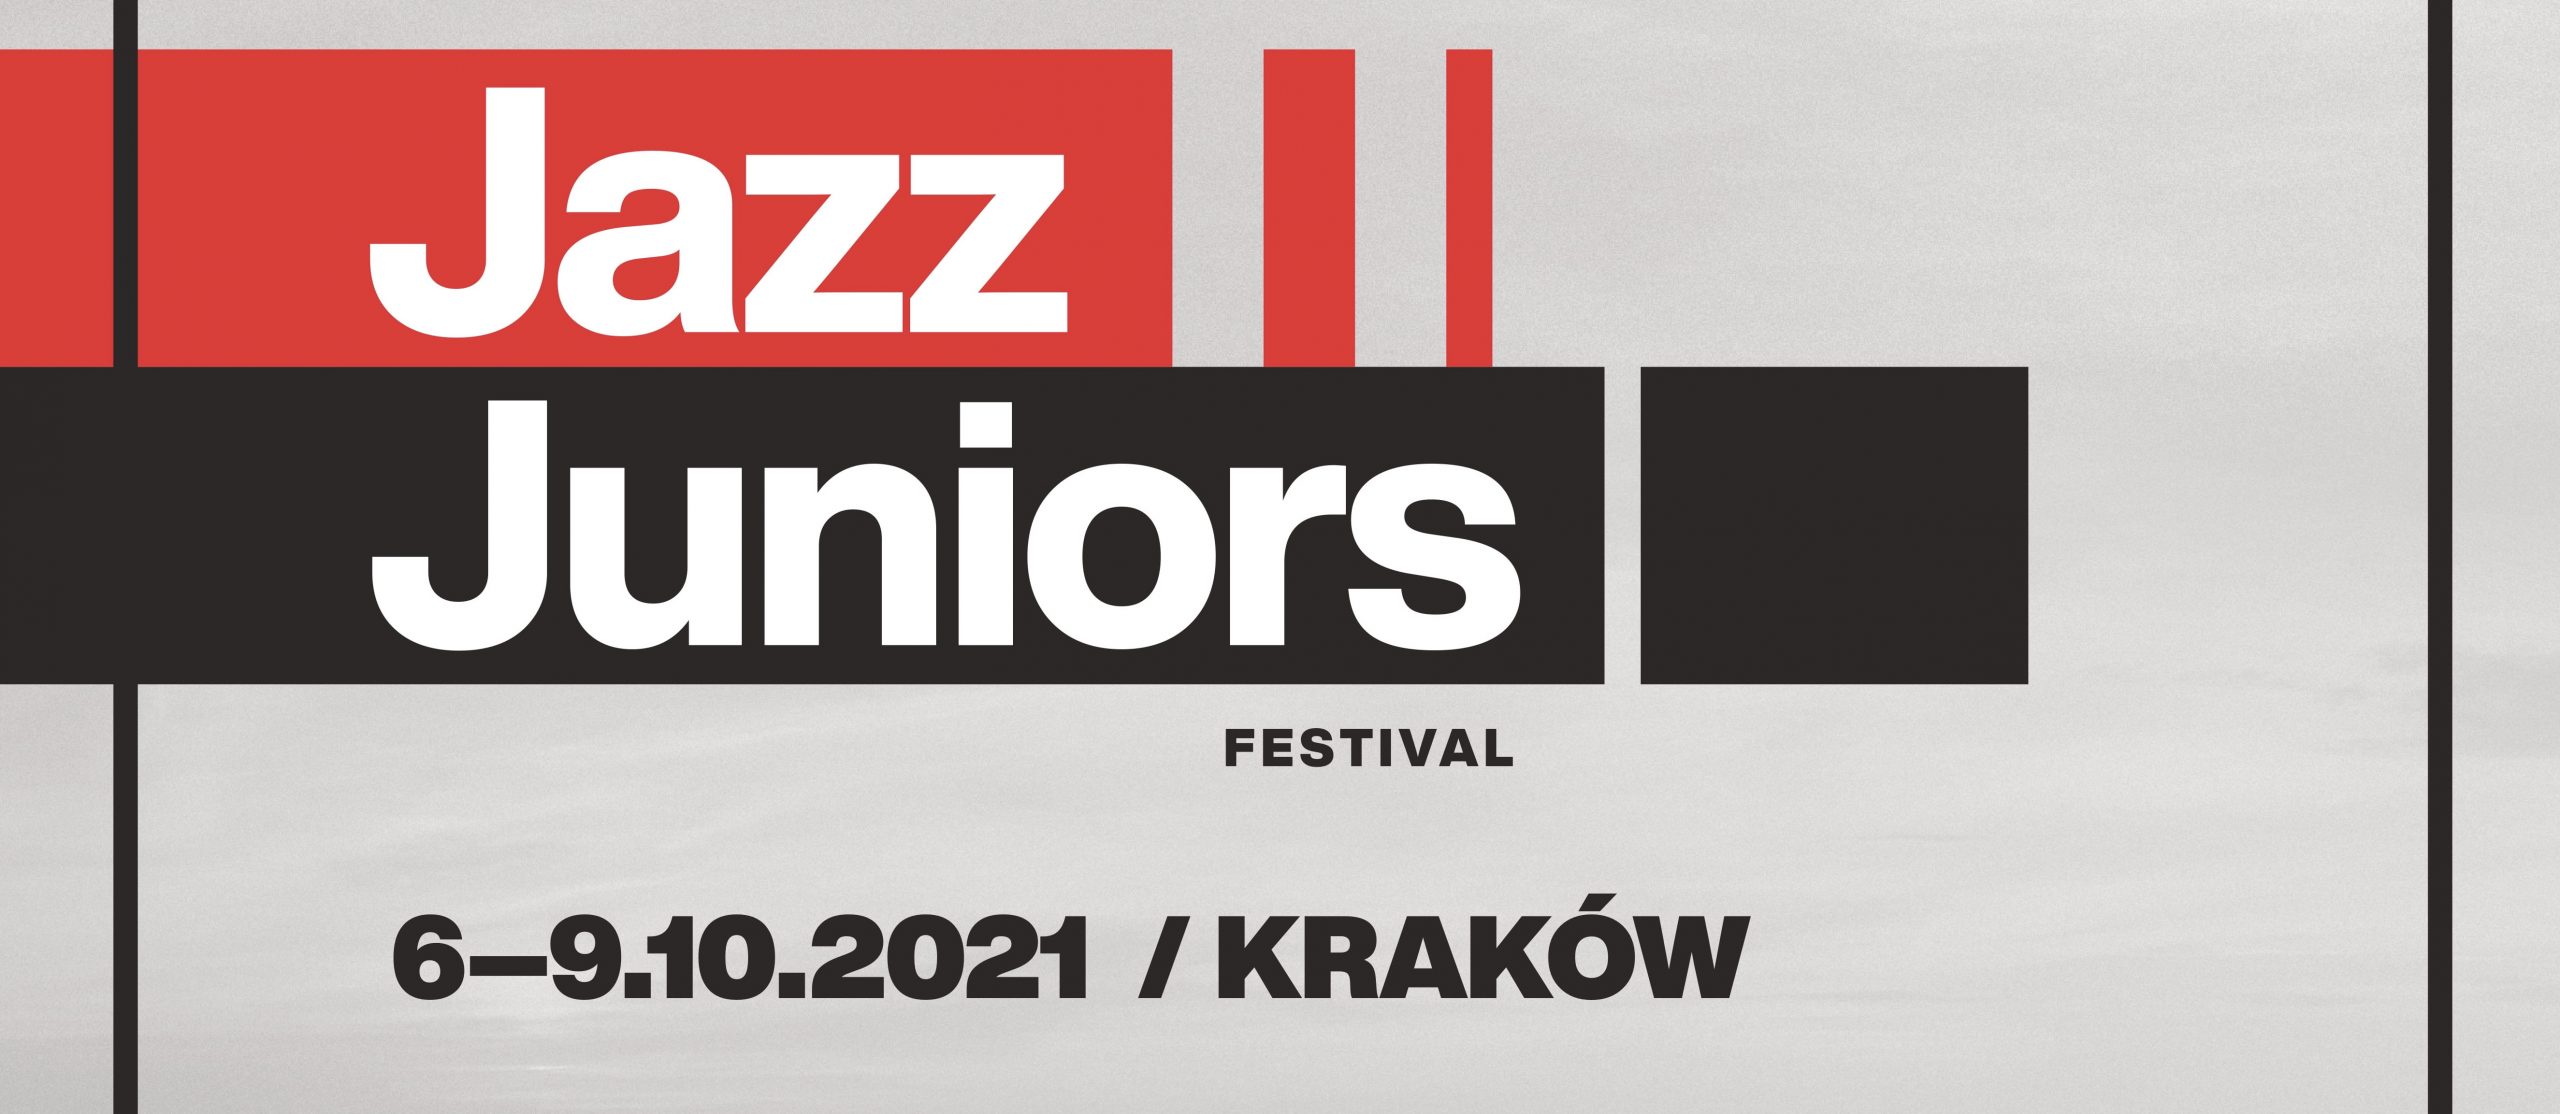 jazz juniors 2021_news